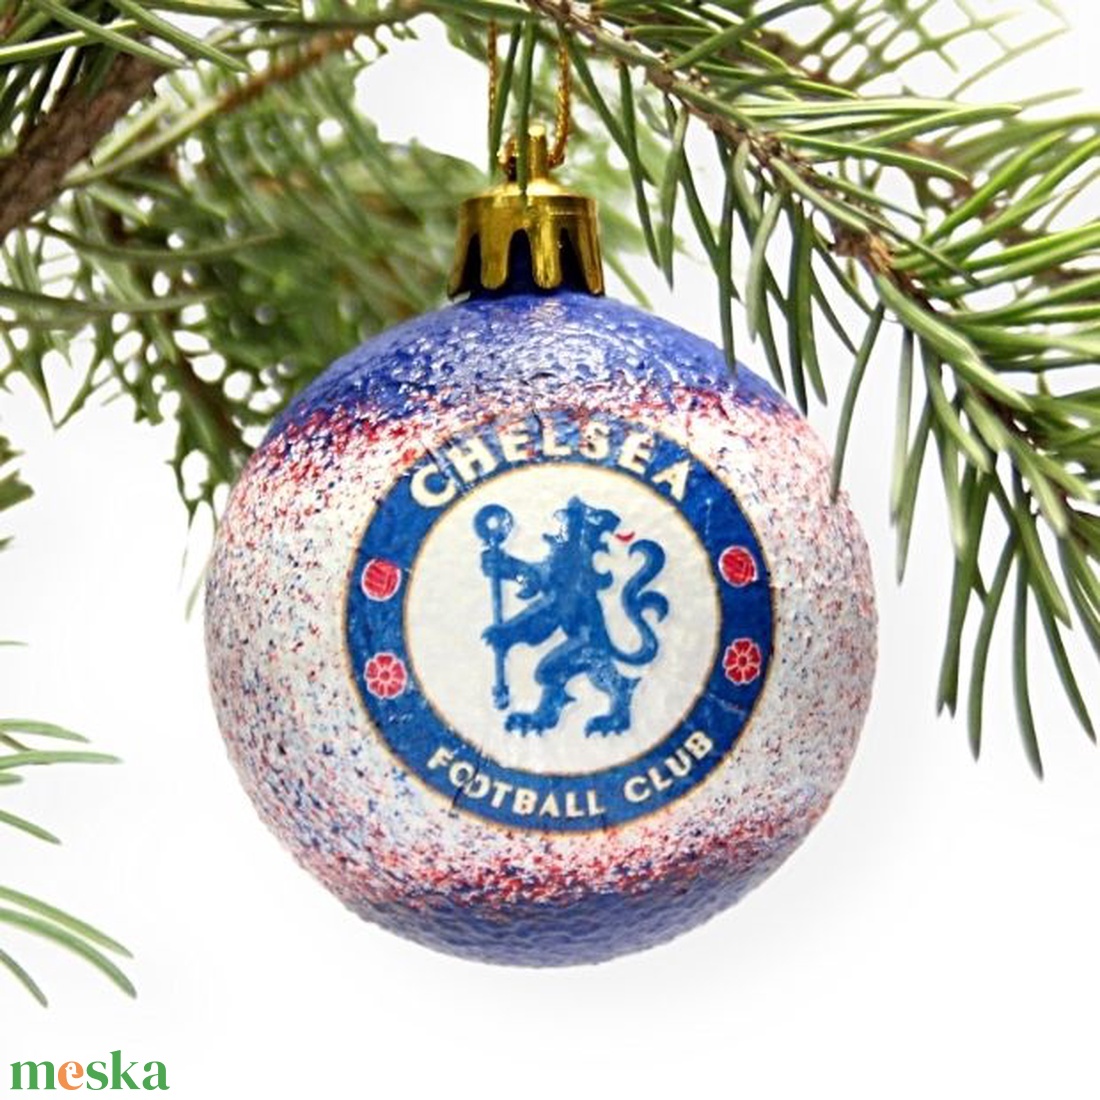 Karácsonyfa gömb foci témájú emblémával - CHELSEA  szurkolóknak   -  párodnak mikulásra és karácsonyra  - karácsony - karácsonyi lakásdekoráció - karácsonyfadíszek - Meska.hu